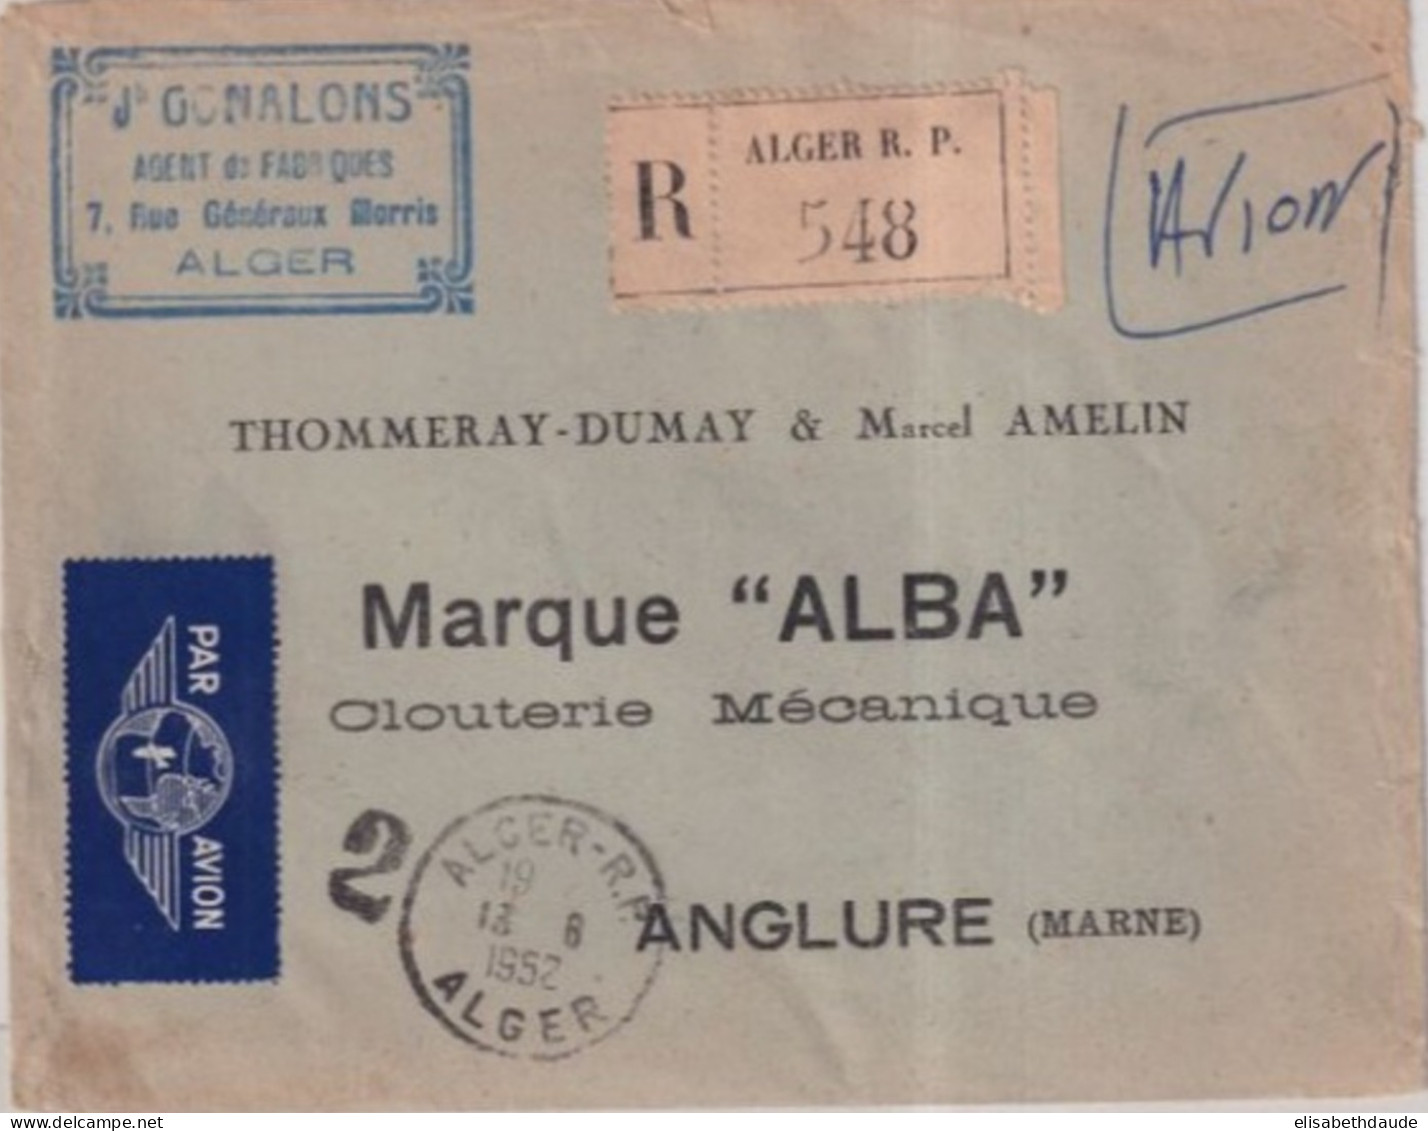 ALGERIE - 1952 - CACHET "GUICHET De RECOMMANDE" N°2 De ALGER - ENVELOPPE AVION => ANGLURE (MARNE) - Storia Postale